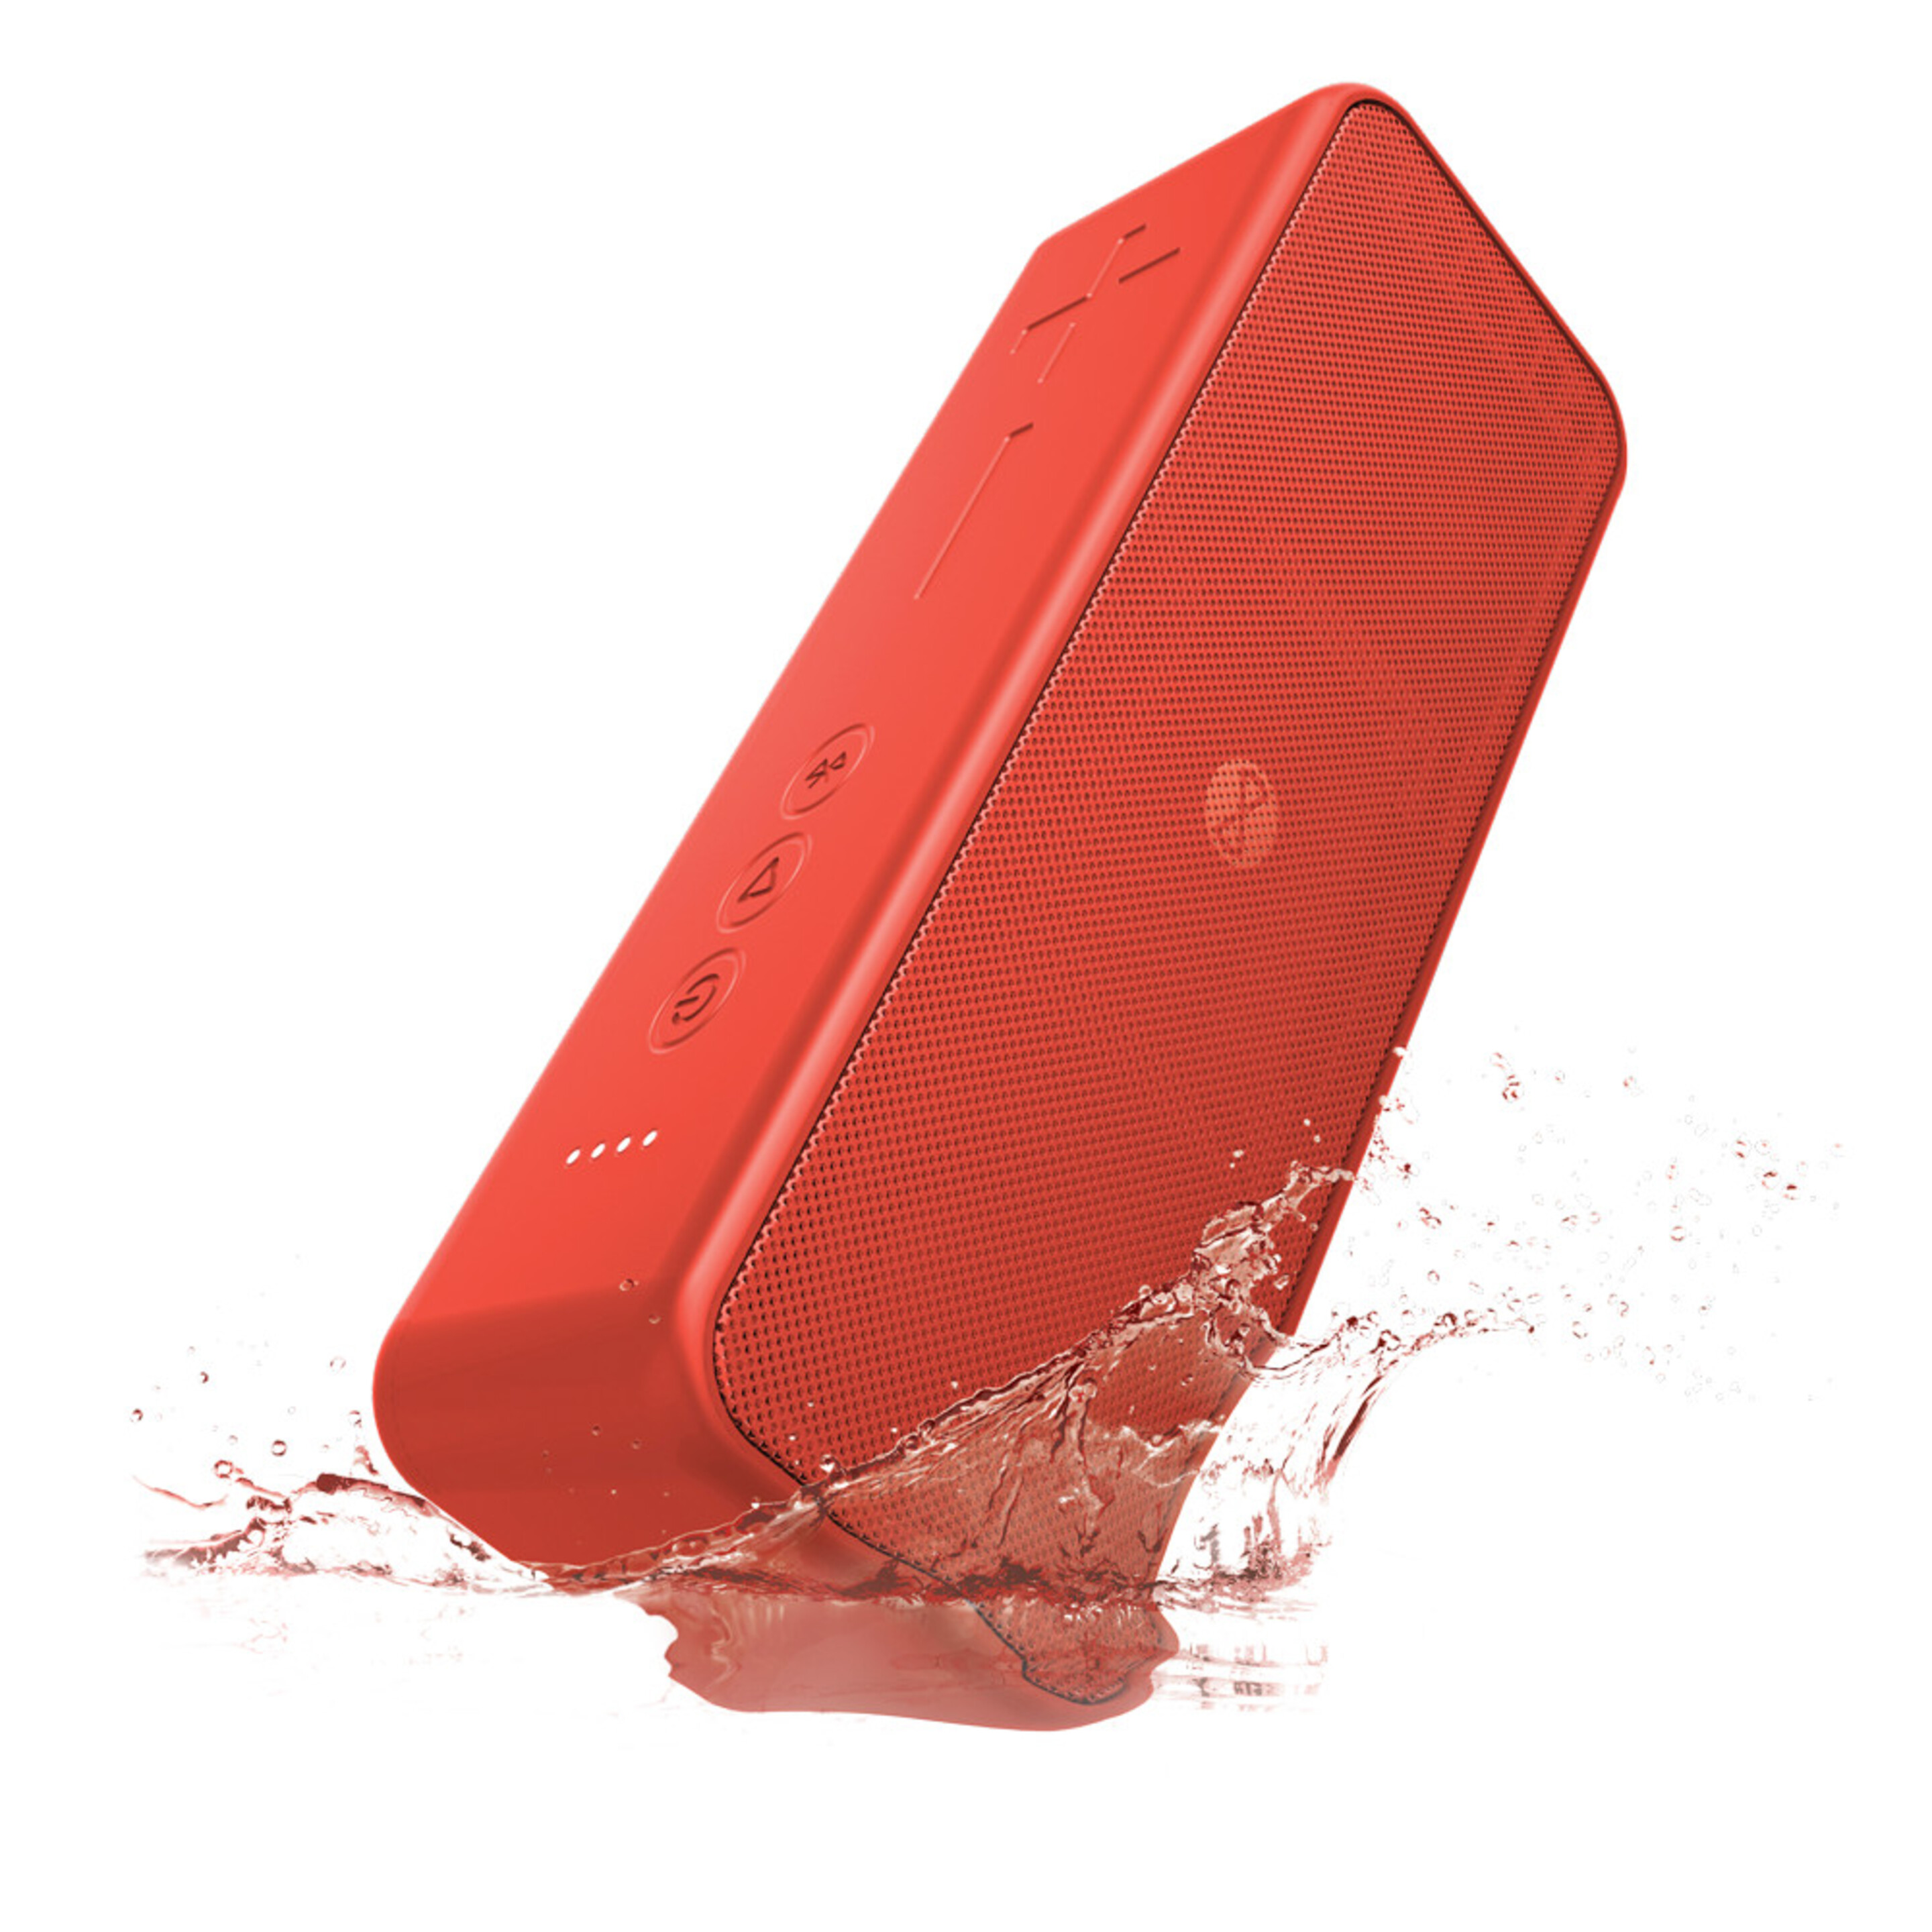 Speaker Bluetooth Forever Blix 10 Bs-850 - Rojo - Altbt  MKP